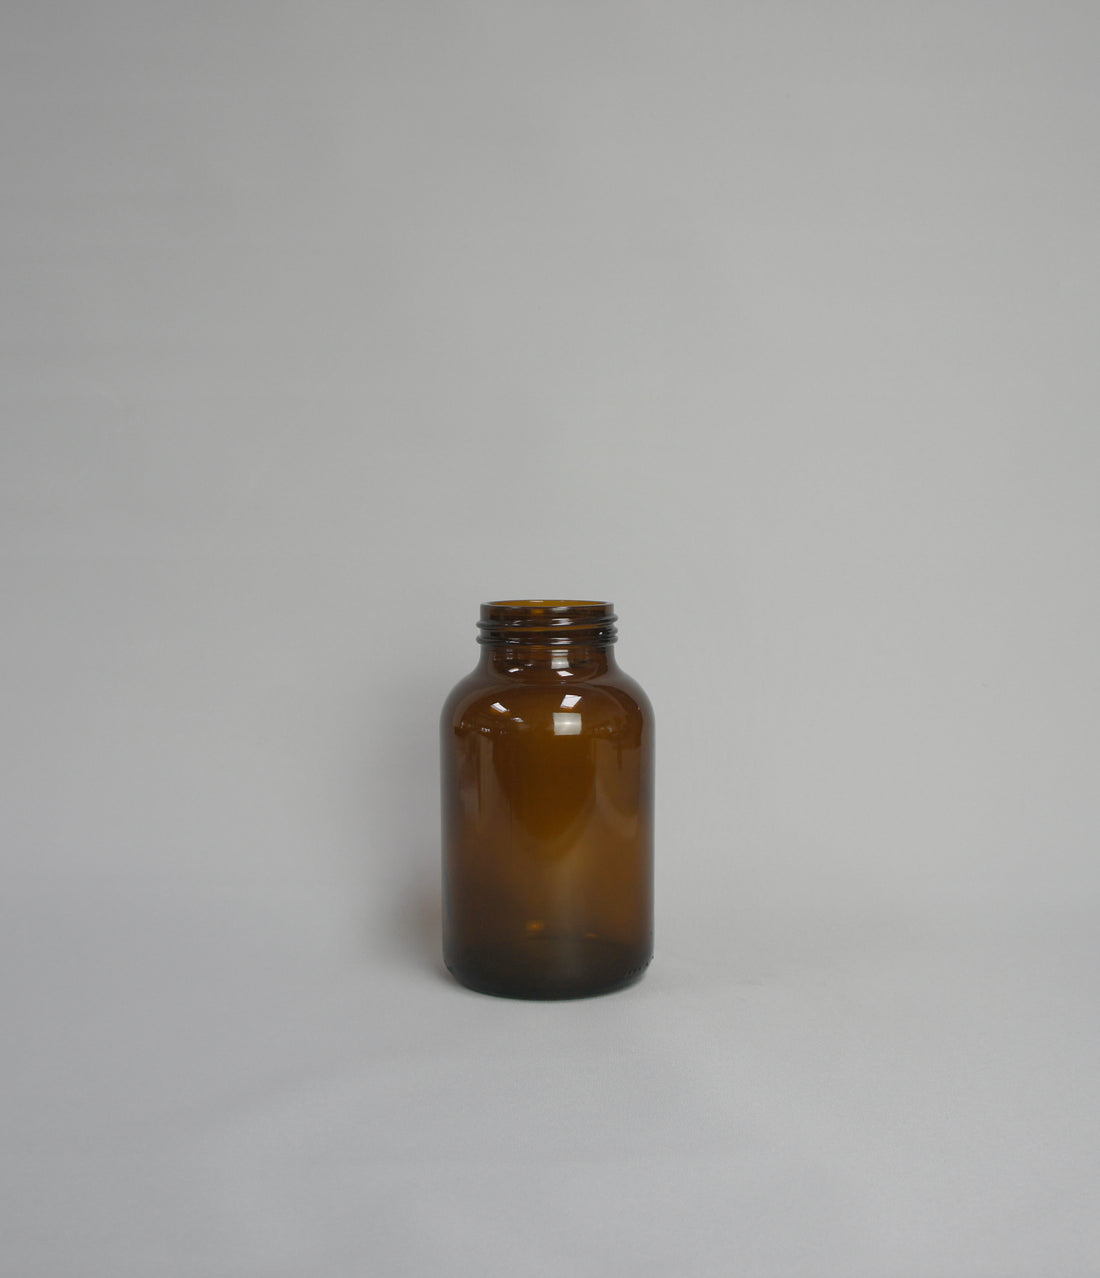 Apothekerflasche, Farbe braun, zylindrisch mit Gewinderand oben